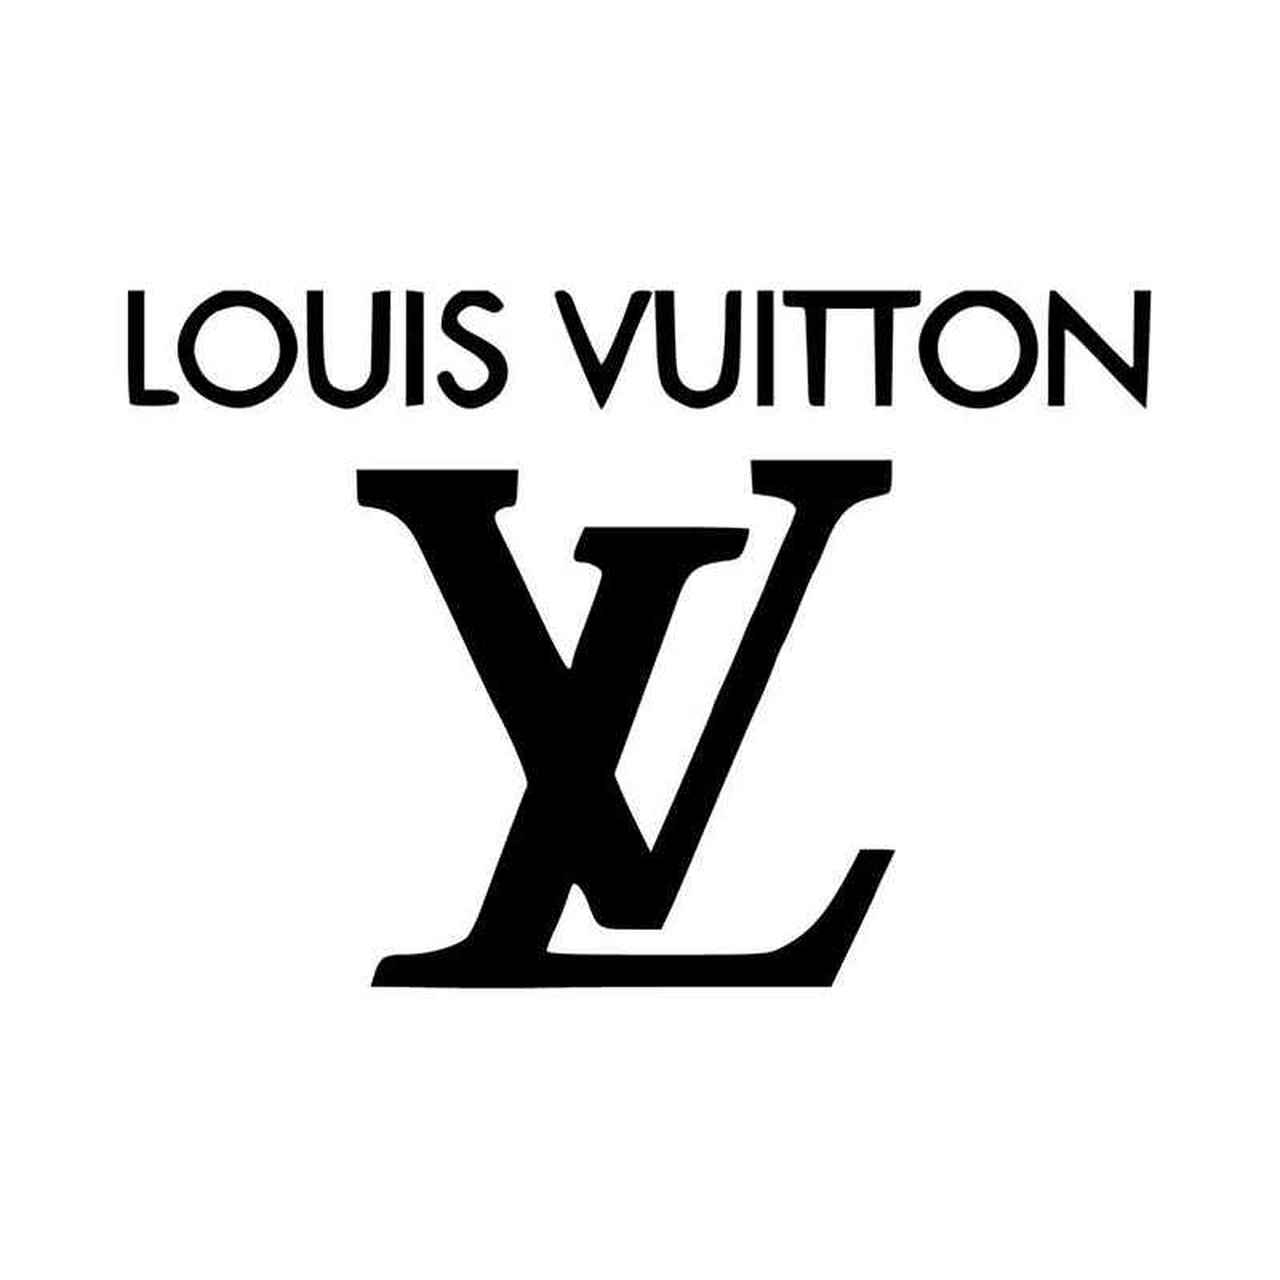 Dripping LV Logo - LogoDix